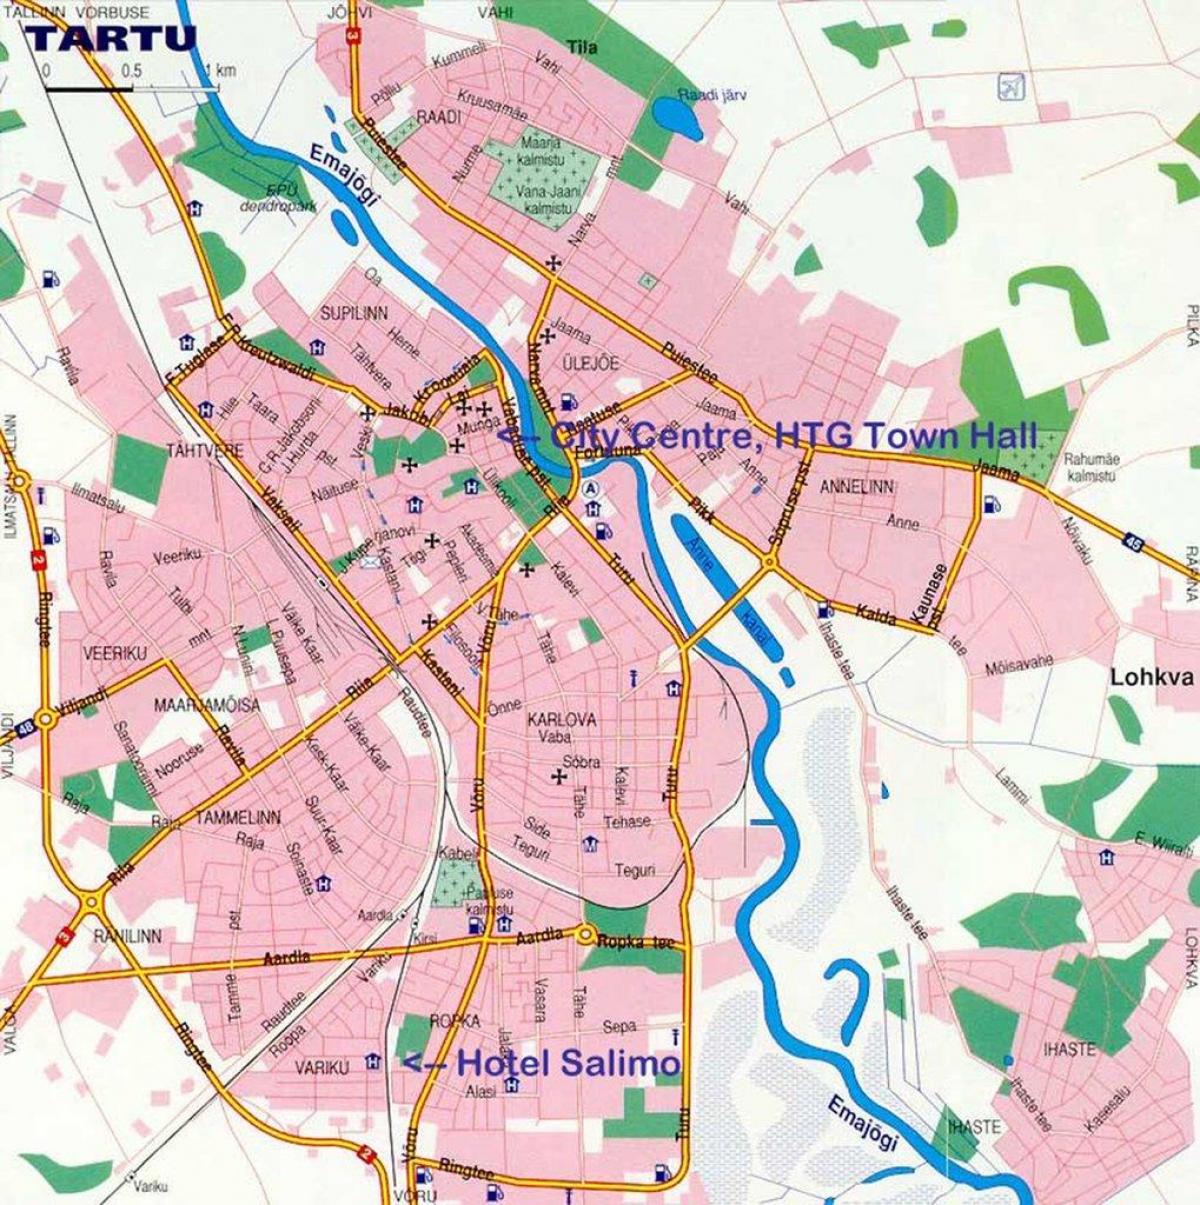 mappa di tartu, Estonia